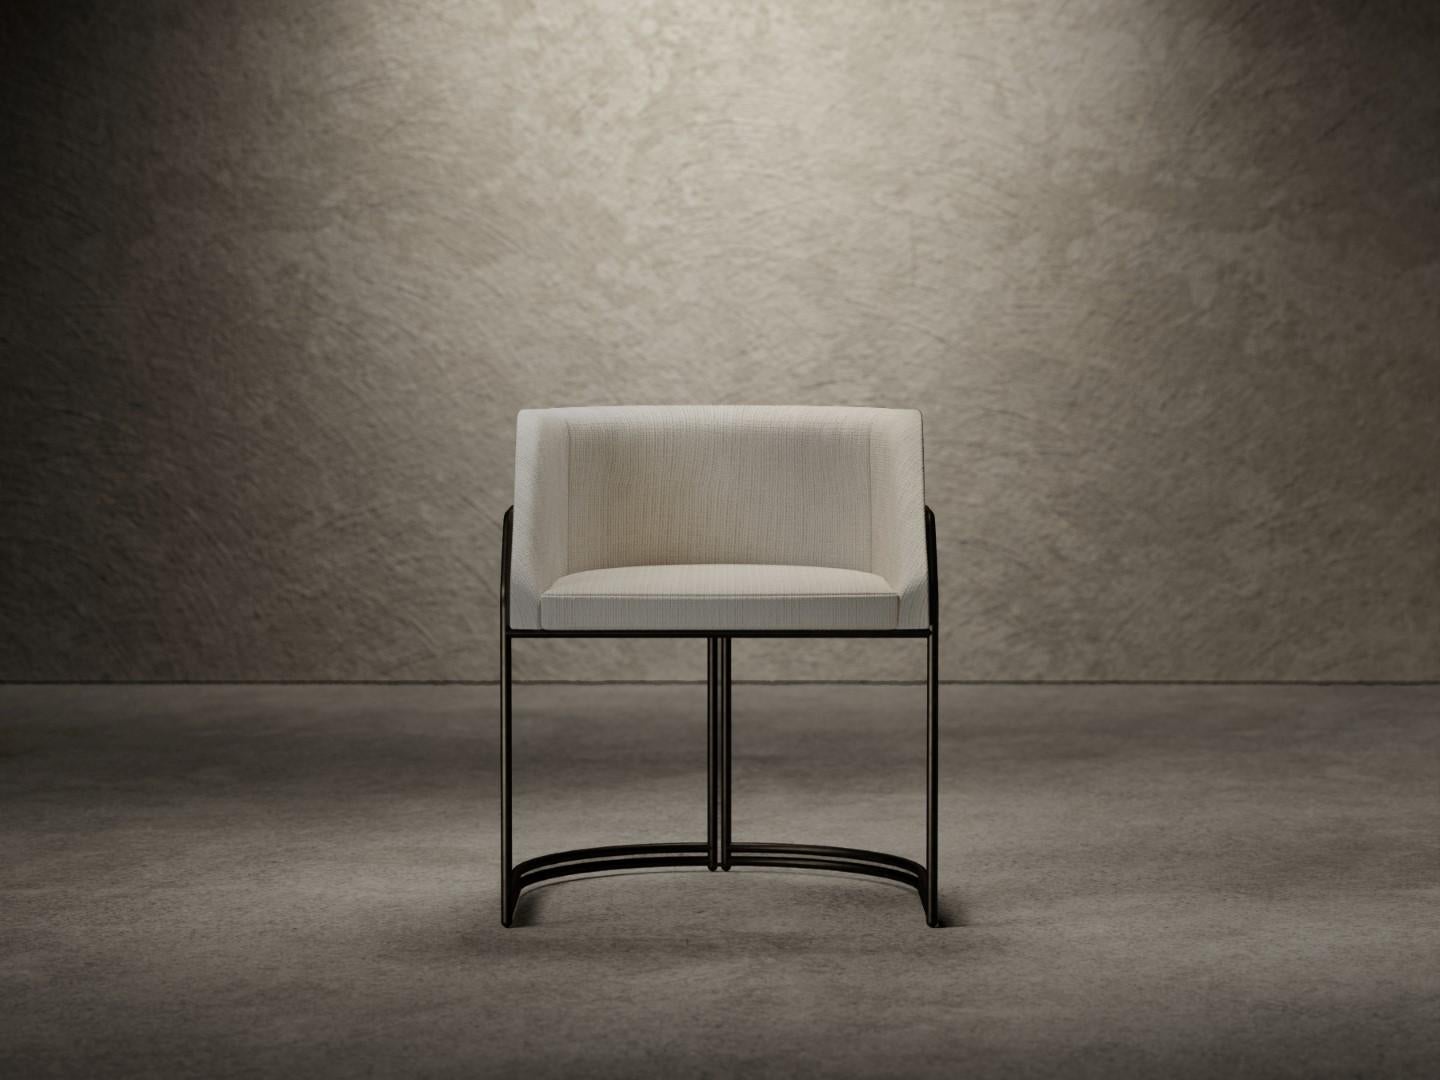 La chaise Déjà Vu est composée d'une coque en bois paddée de mousse de polyuréthane de différentes densités et finie par une couche supérieure en fibre acrylique. 
L'assise est disponible entièrement recouverte de tissu ou de cuir, tandis que le